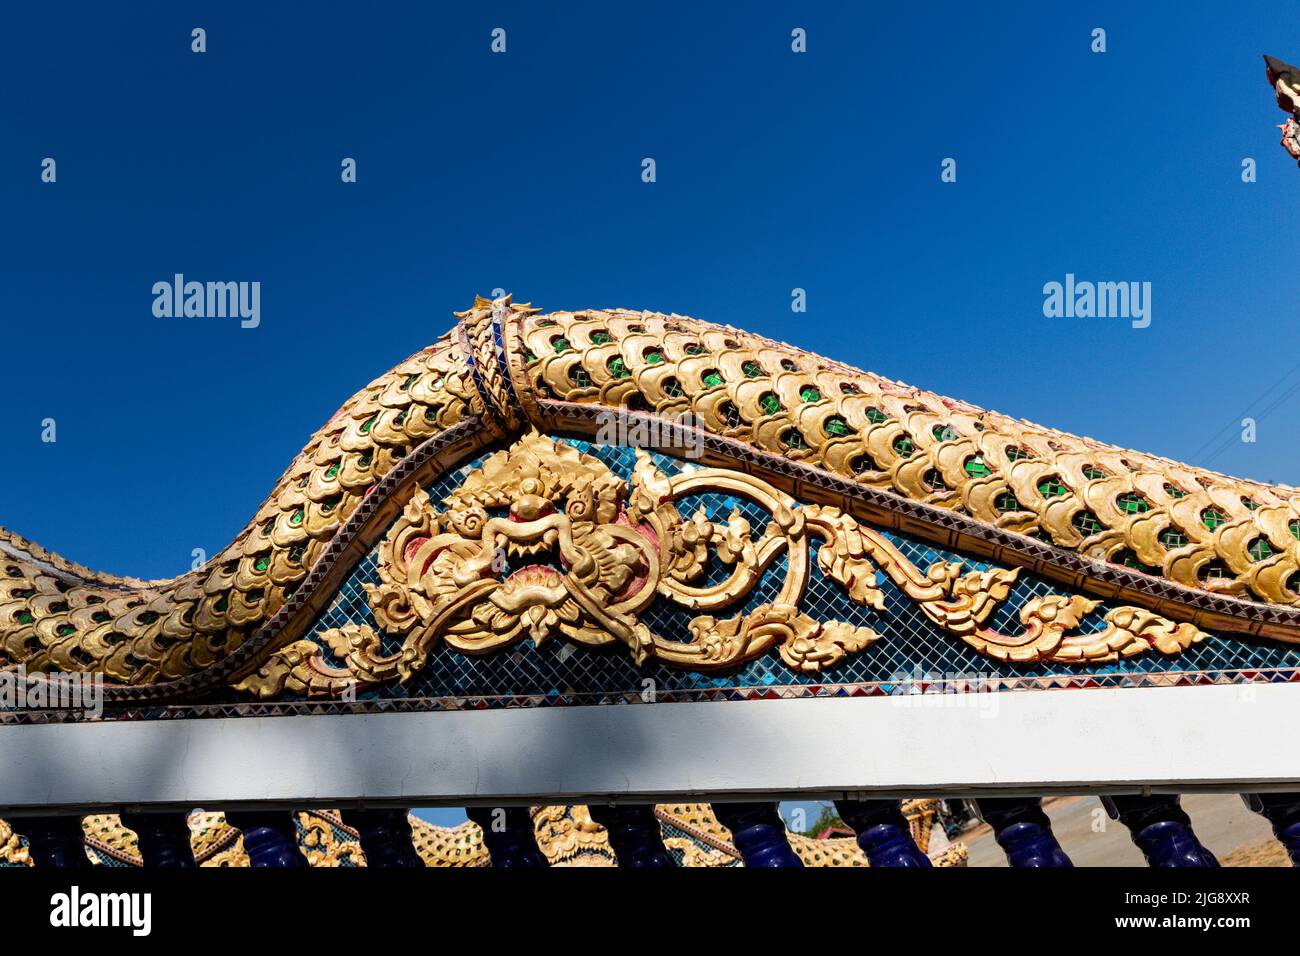 Sculpture du dragon, Wat Khao Daeng, temple bouddhiste, parc national Khao Sam Roi Yot, province de Prachuap Khiri Khan, Thaïlande, Asie Banque D'Images